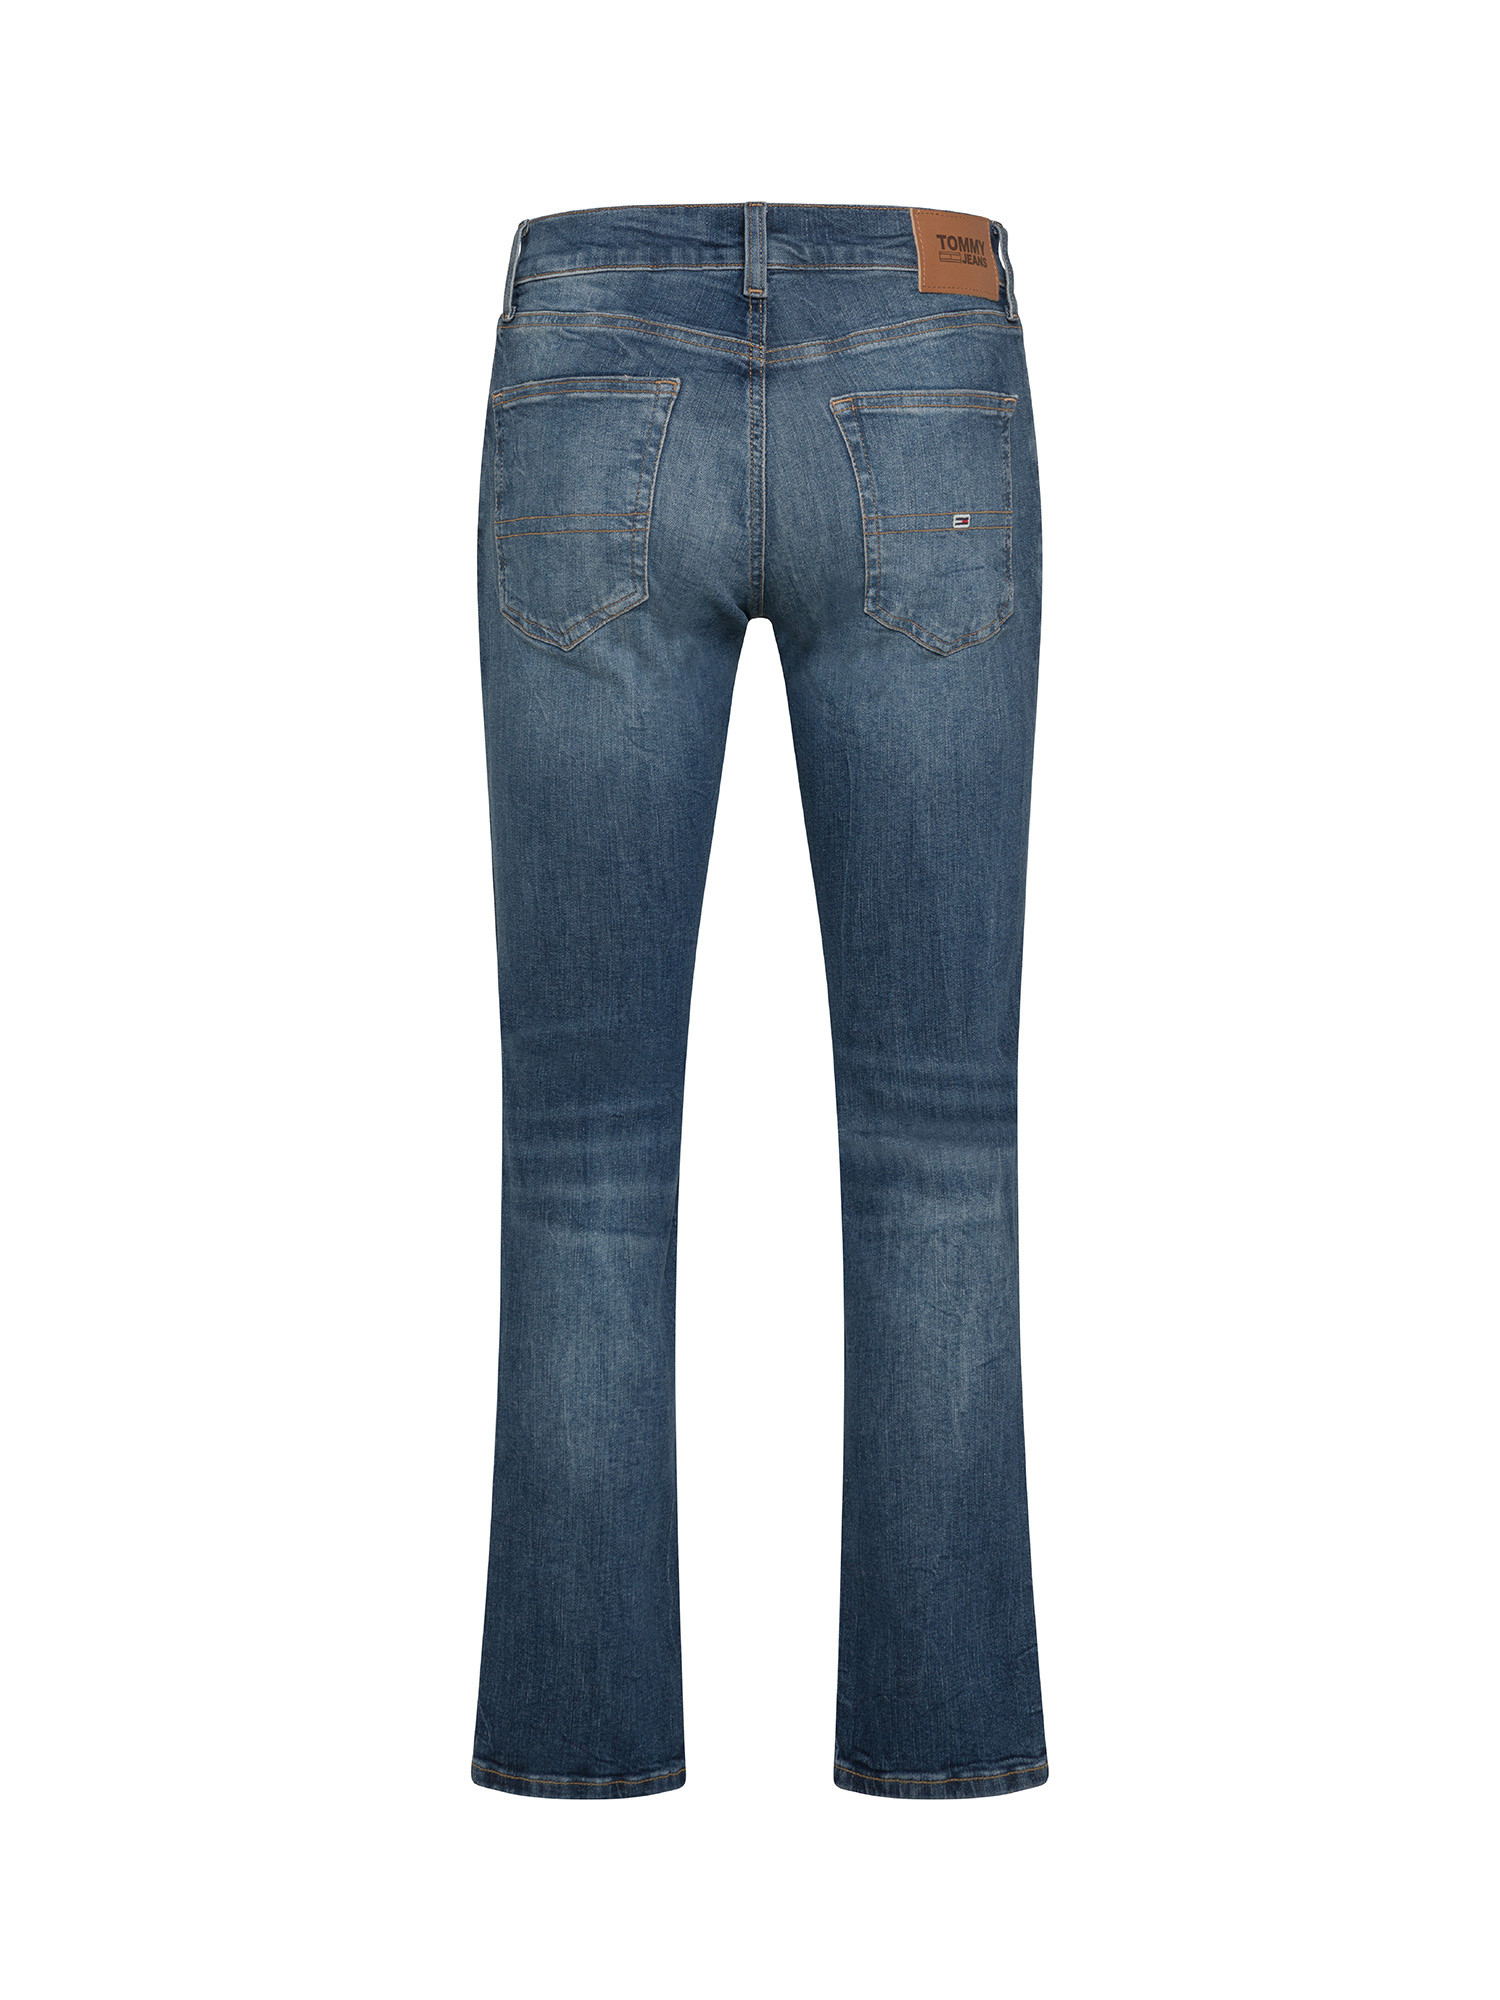 Tommy Jeans - Jeans cinque tasche slim fit, Denim, large image number 1